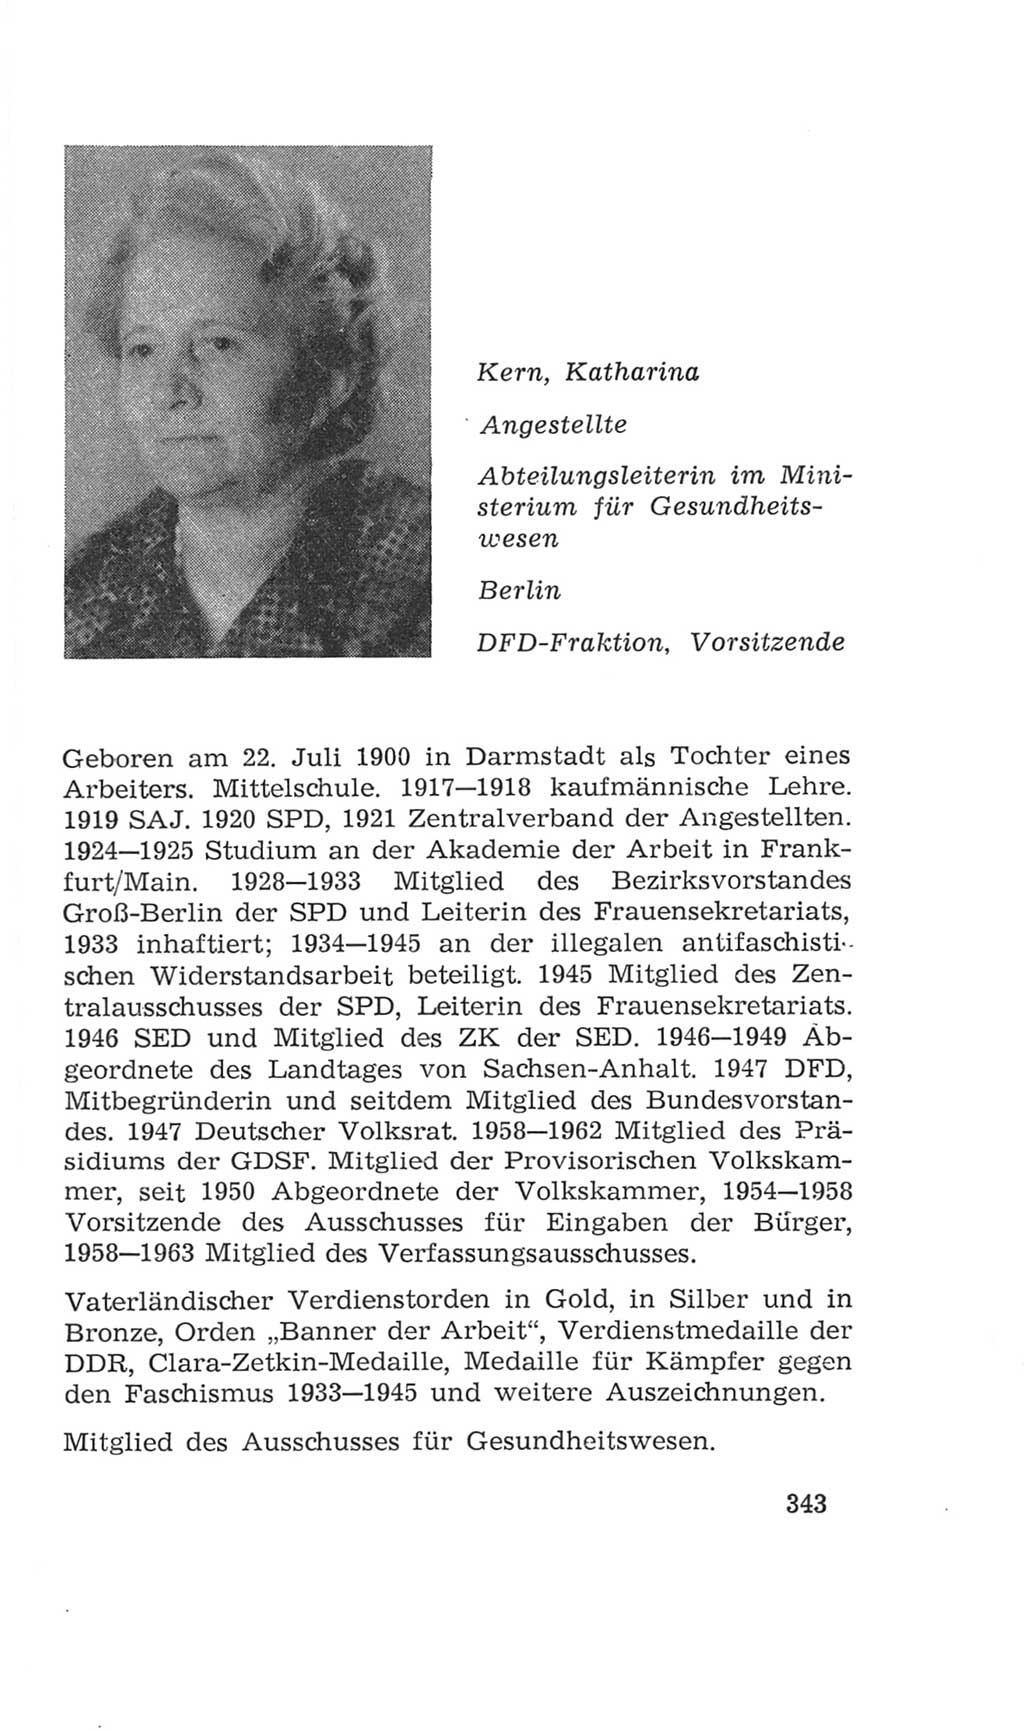 Volkskammer (VK) der Deutschen Demokratischen Republik (DDR), 4. Wahlperiode 1963-1967, Seite 343 (VK. DDR 4. WP. 1963-1967, S. 343)